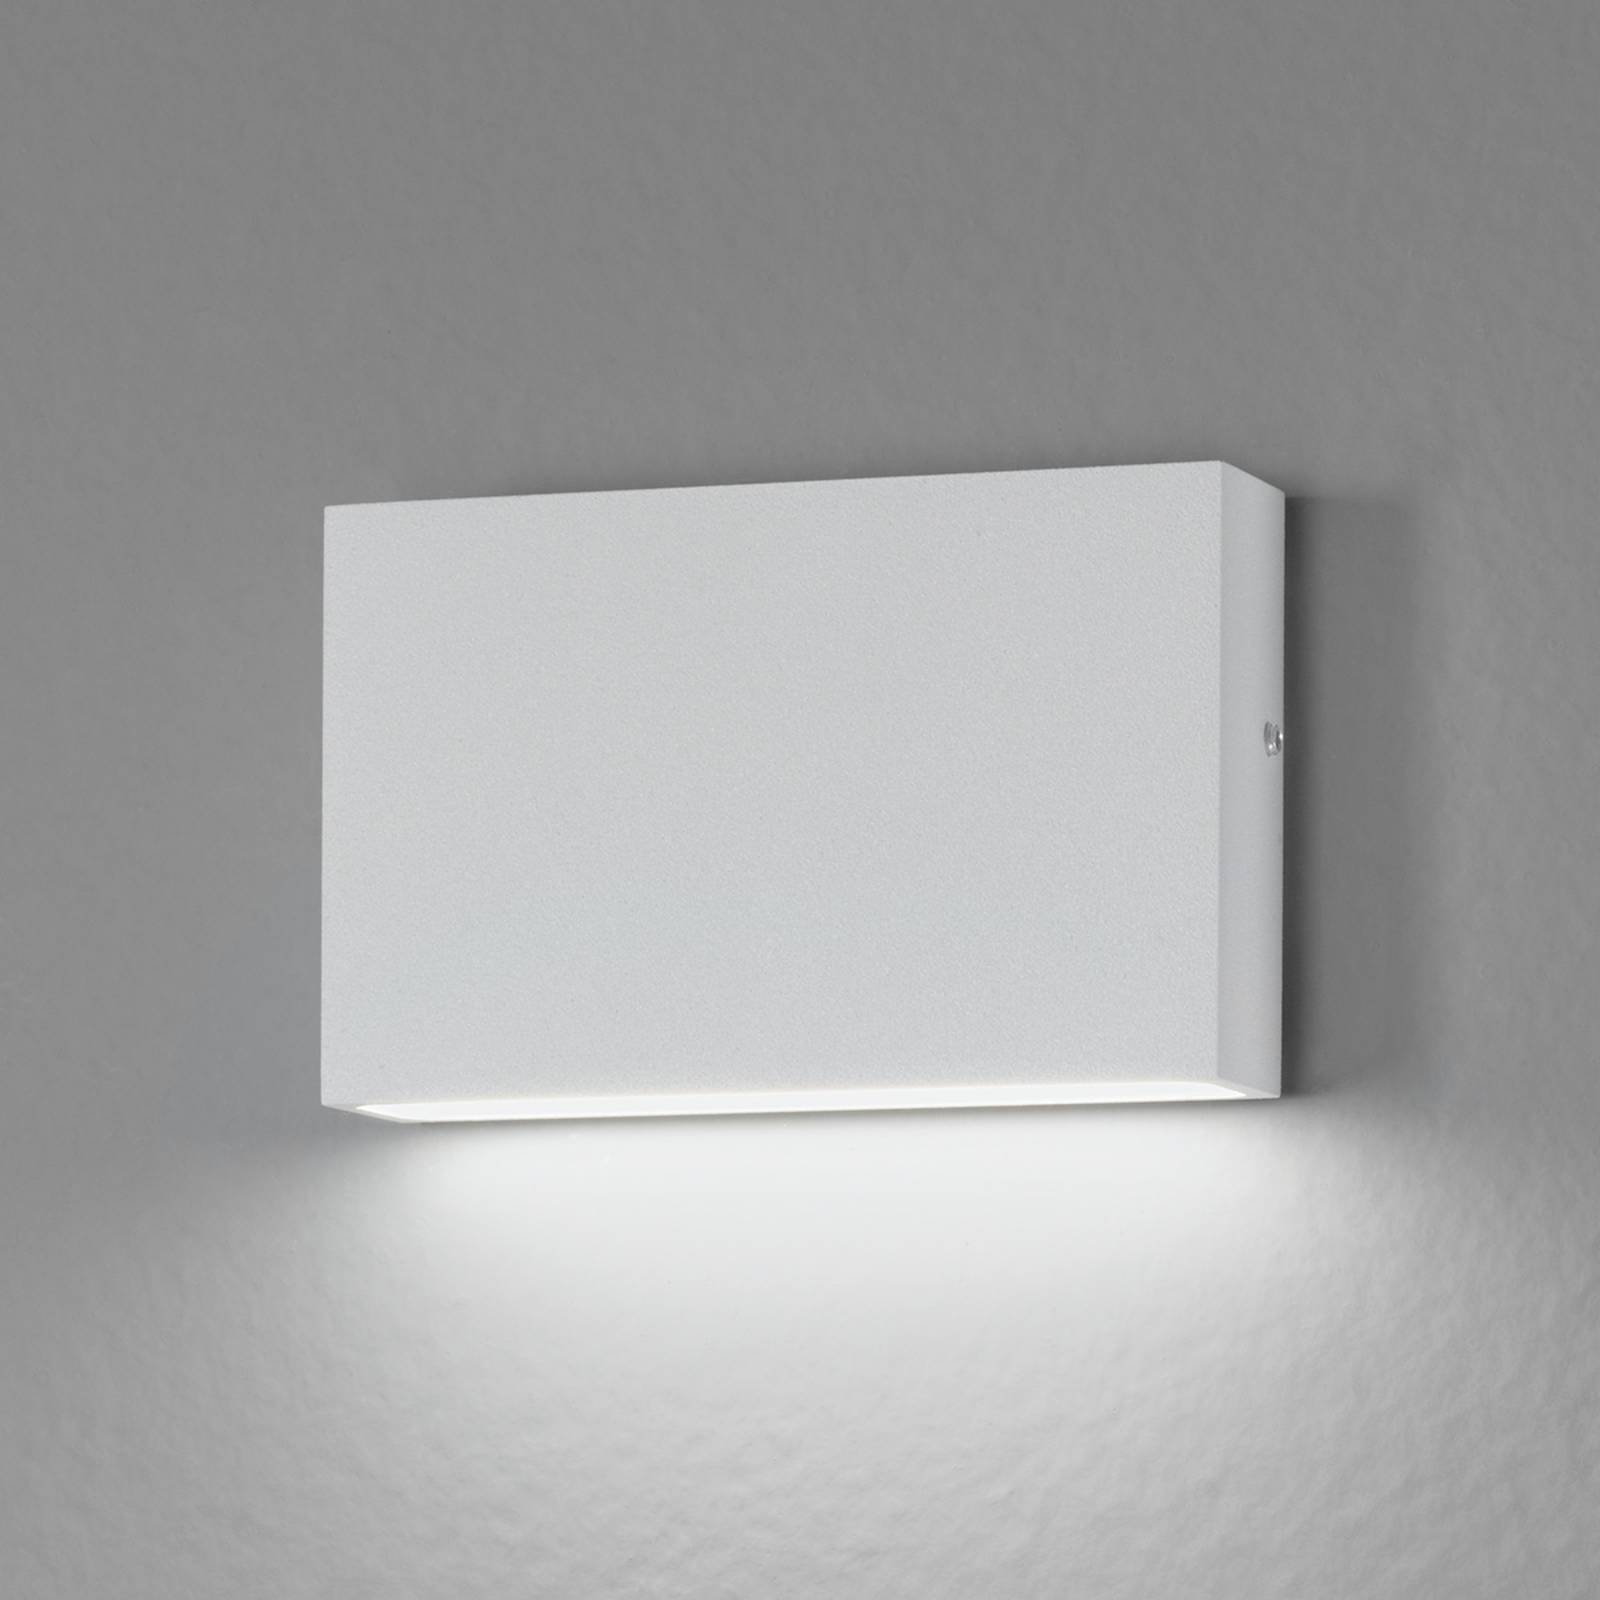 Für innen und außen - LED-Wandleuchte Flatbox von Egger Licht